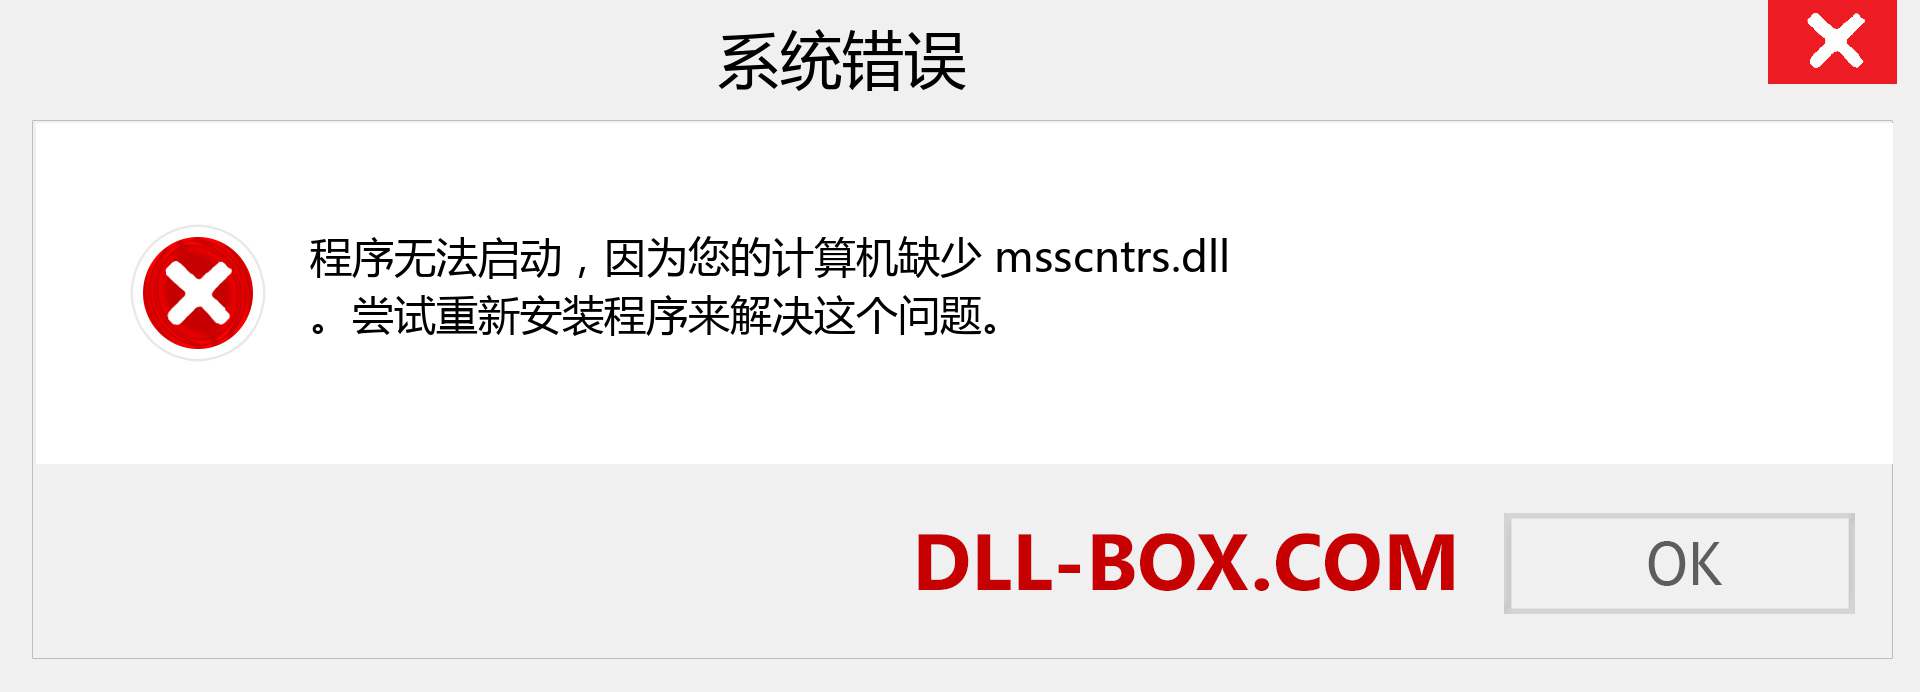 msscntrs.dll 文件丢失？。 适用于 Windows 7、8、10 的下载 - 修复 Windows、照片、图像上的 msscntrs dll 丢失错误